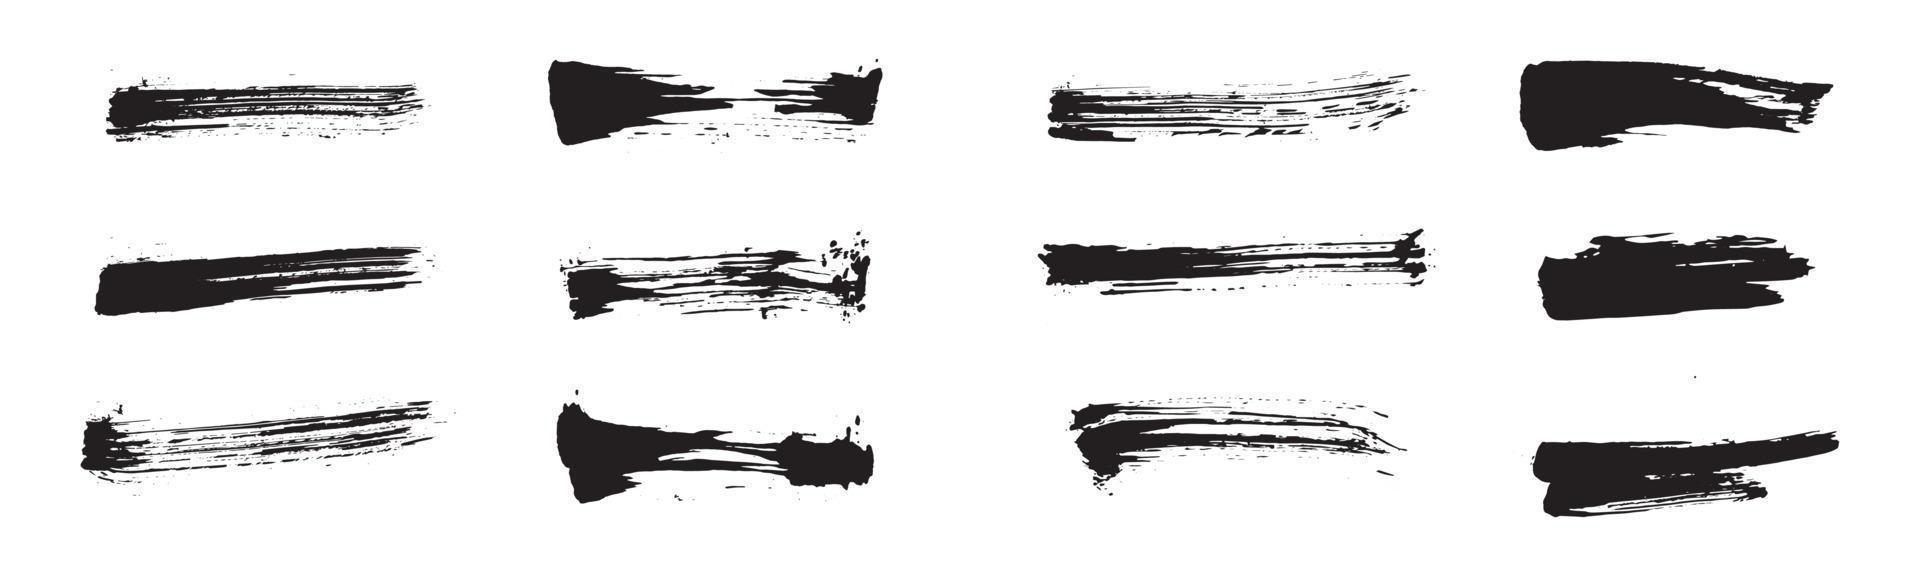 kinesisk stil abstrakta penseldrag. uppsättning av svart bläck streck på vitt papper. grafiska designelement för kopieringsutrymme, nedre tredjedelen, texteffekt, vektorborste, etc. vektor